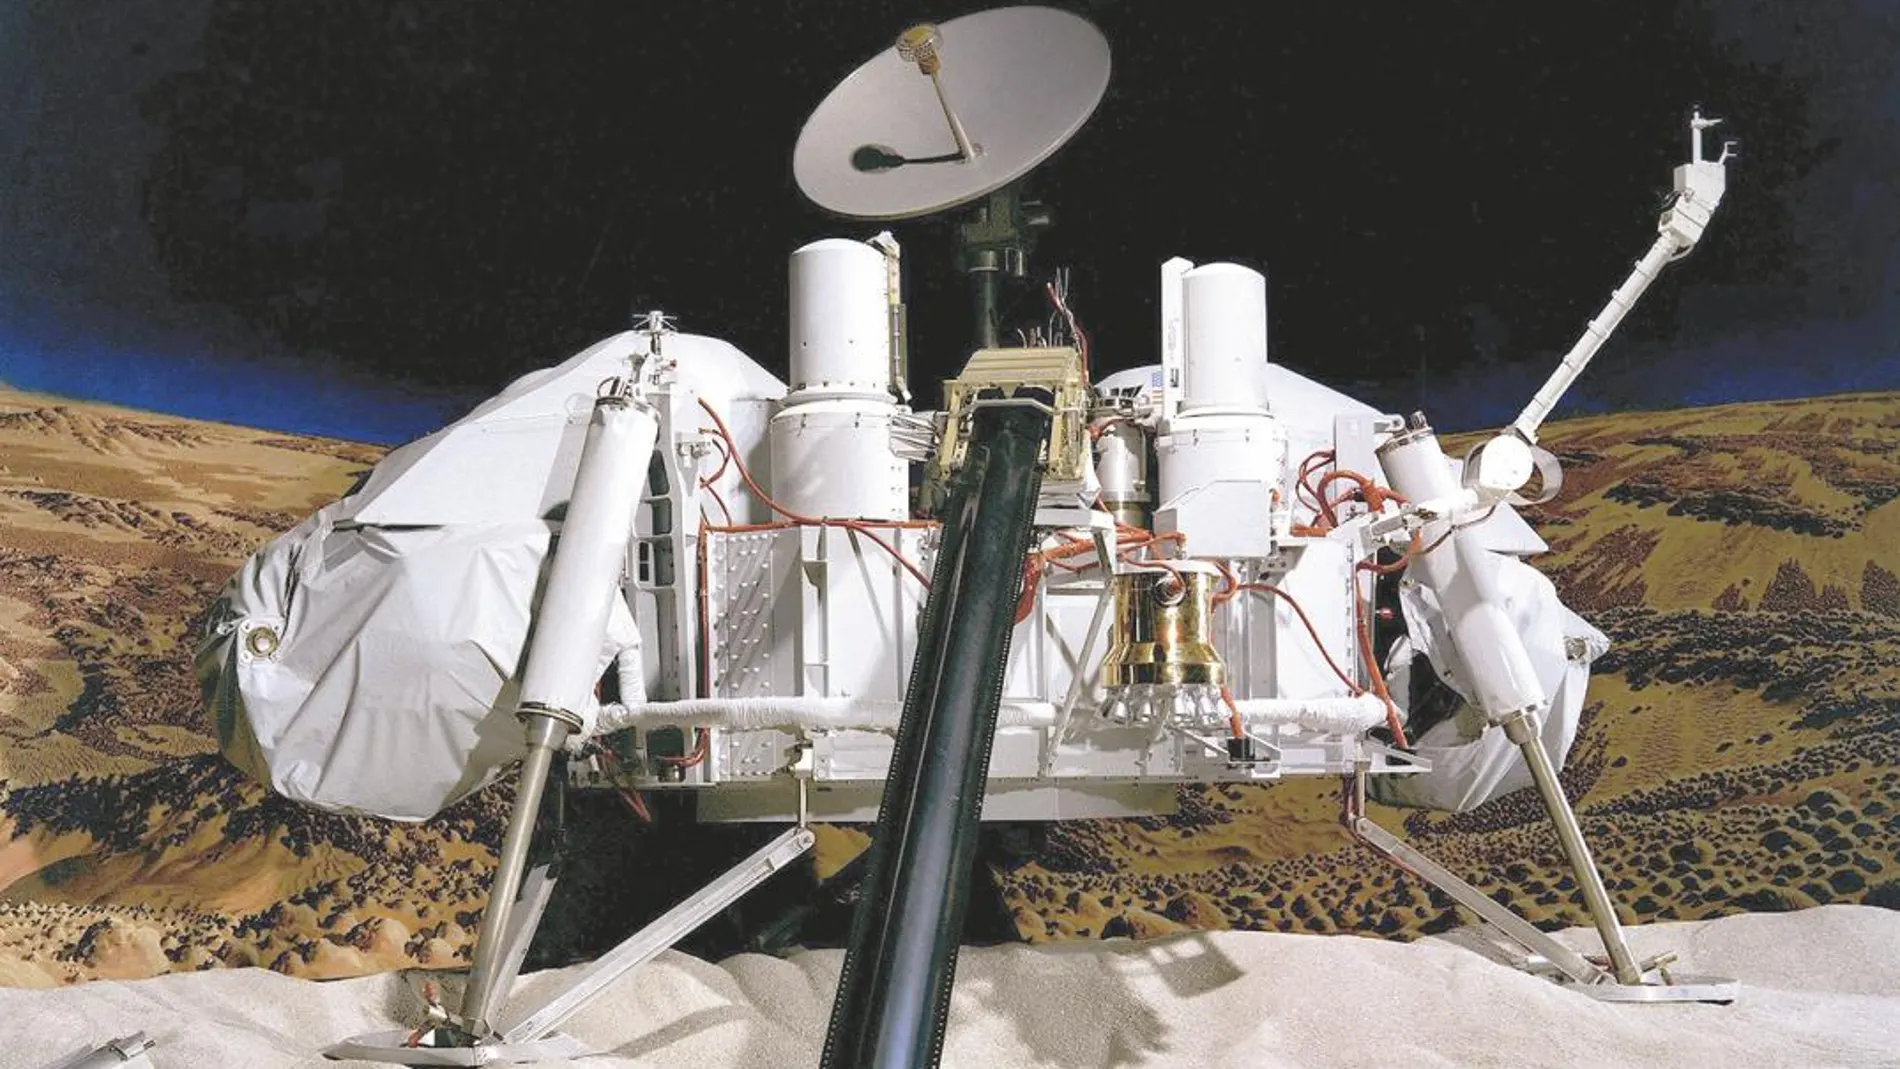 Reproducción de la sonda espacial Viking II hecha para una exposición